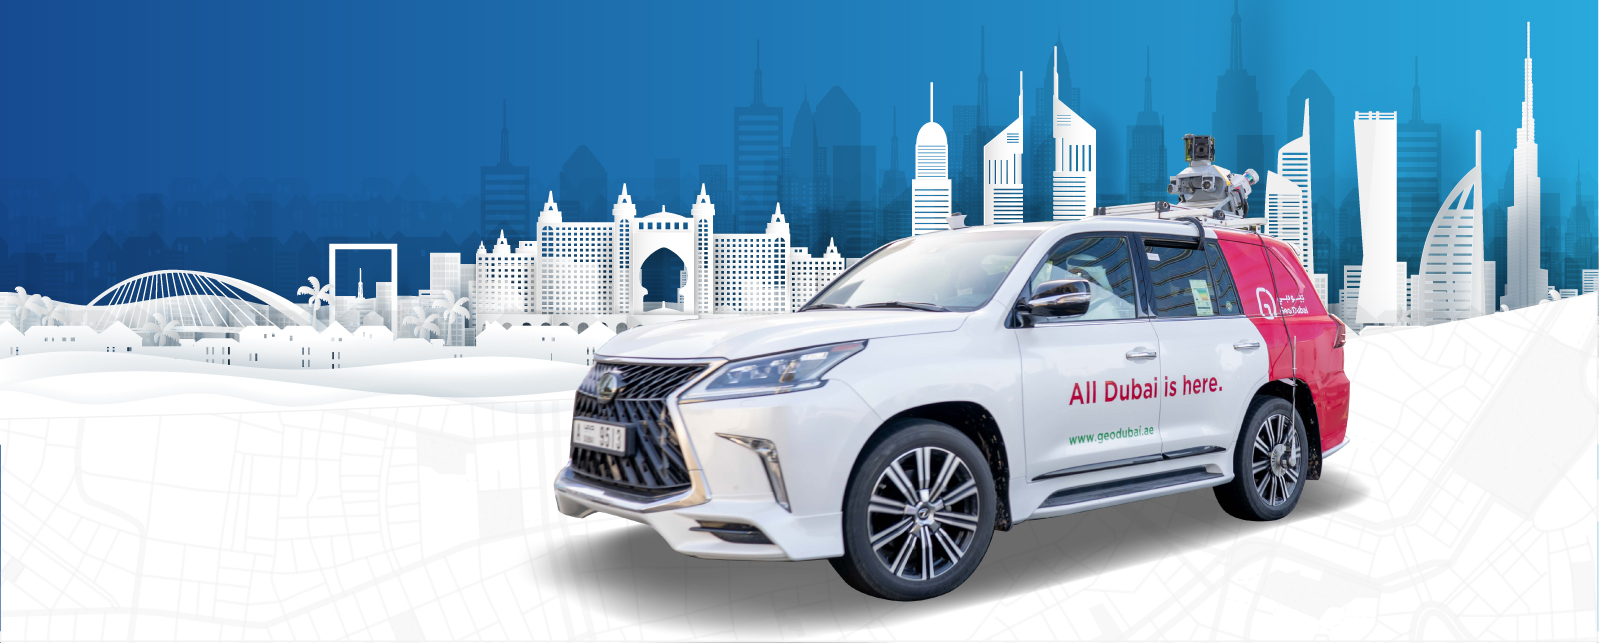 Dubai Municipality launches HD Maps project for autonomous vehicles June 2022